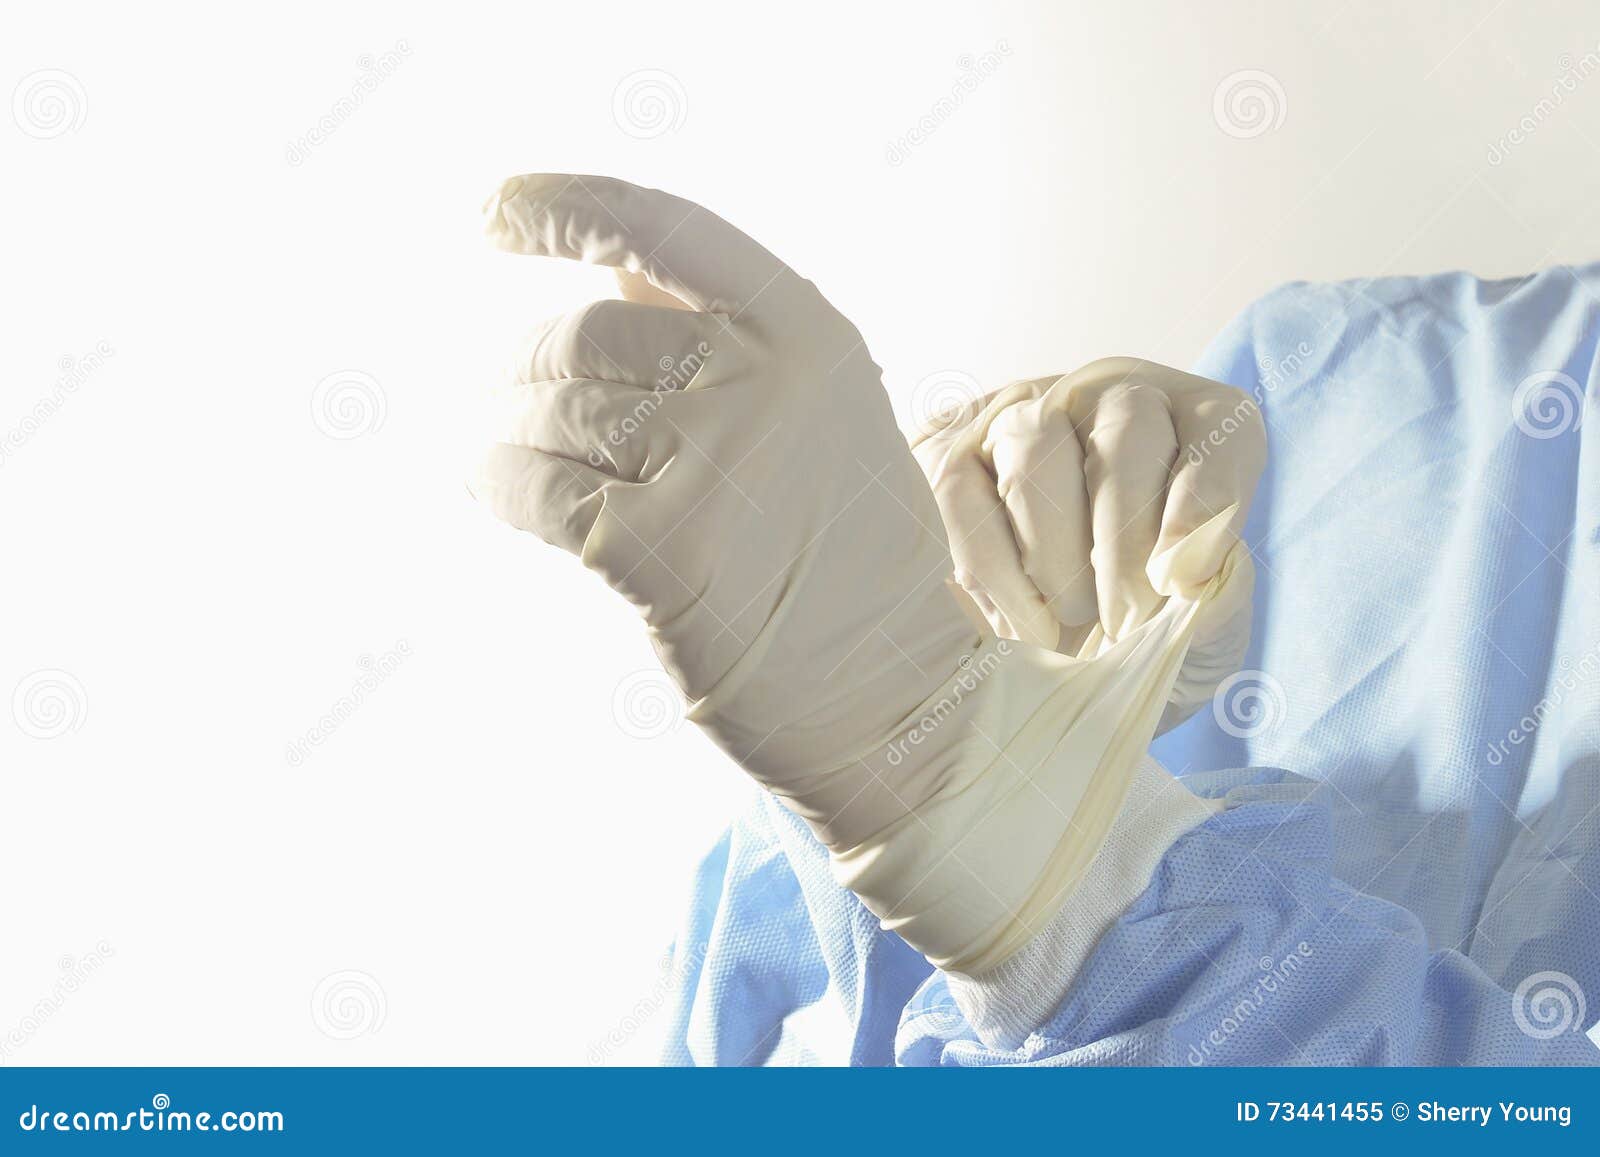 Guanti sterili immagine stock. Immagine di powdered, ospedale - 73441455